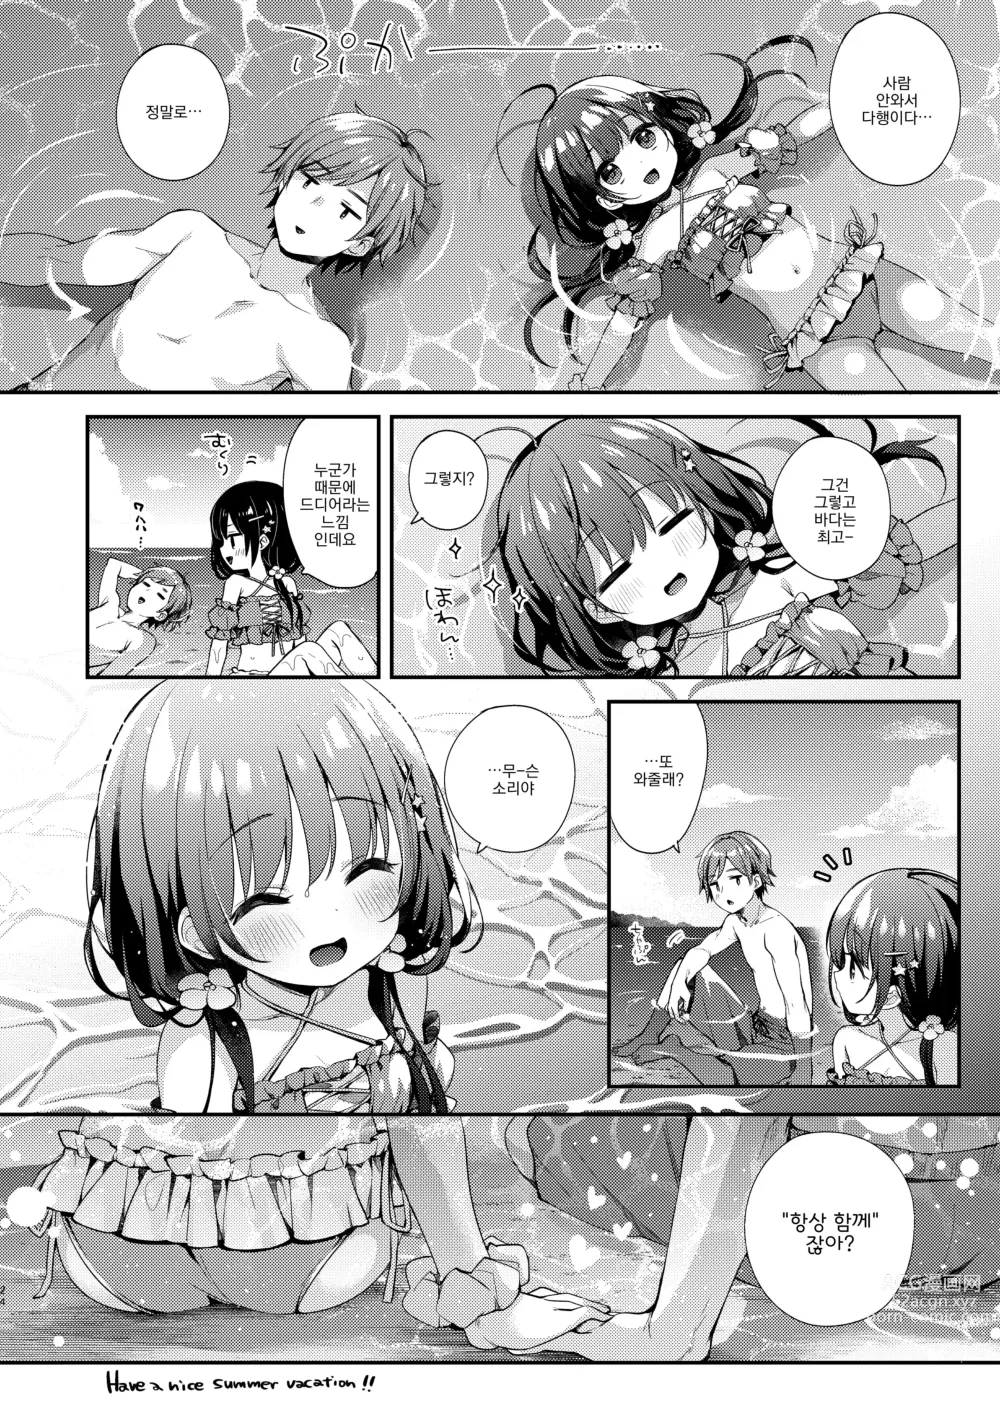 Page 23 of doujinshi 우리들과 어느 여름날